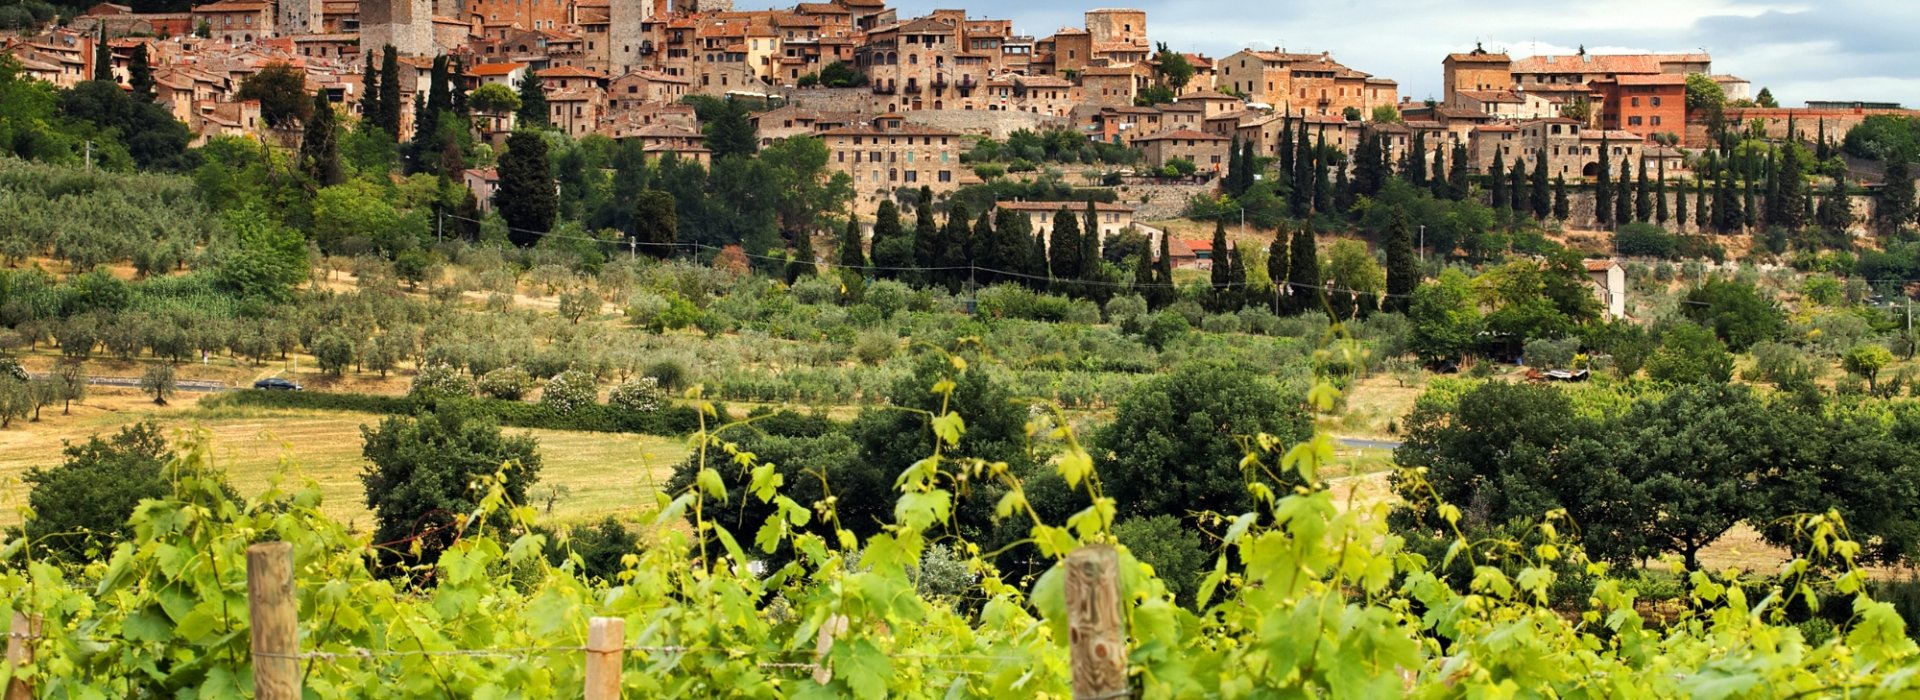 Tour de un día para descubrir algunos hermosos pueblos toscanos, incluido San Gimignano